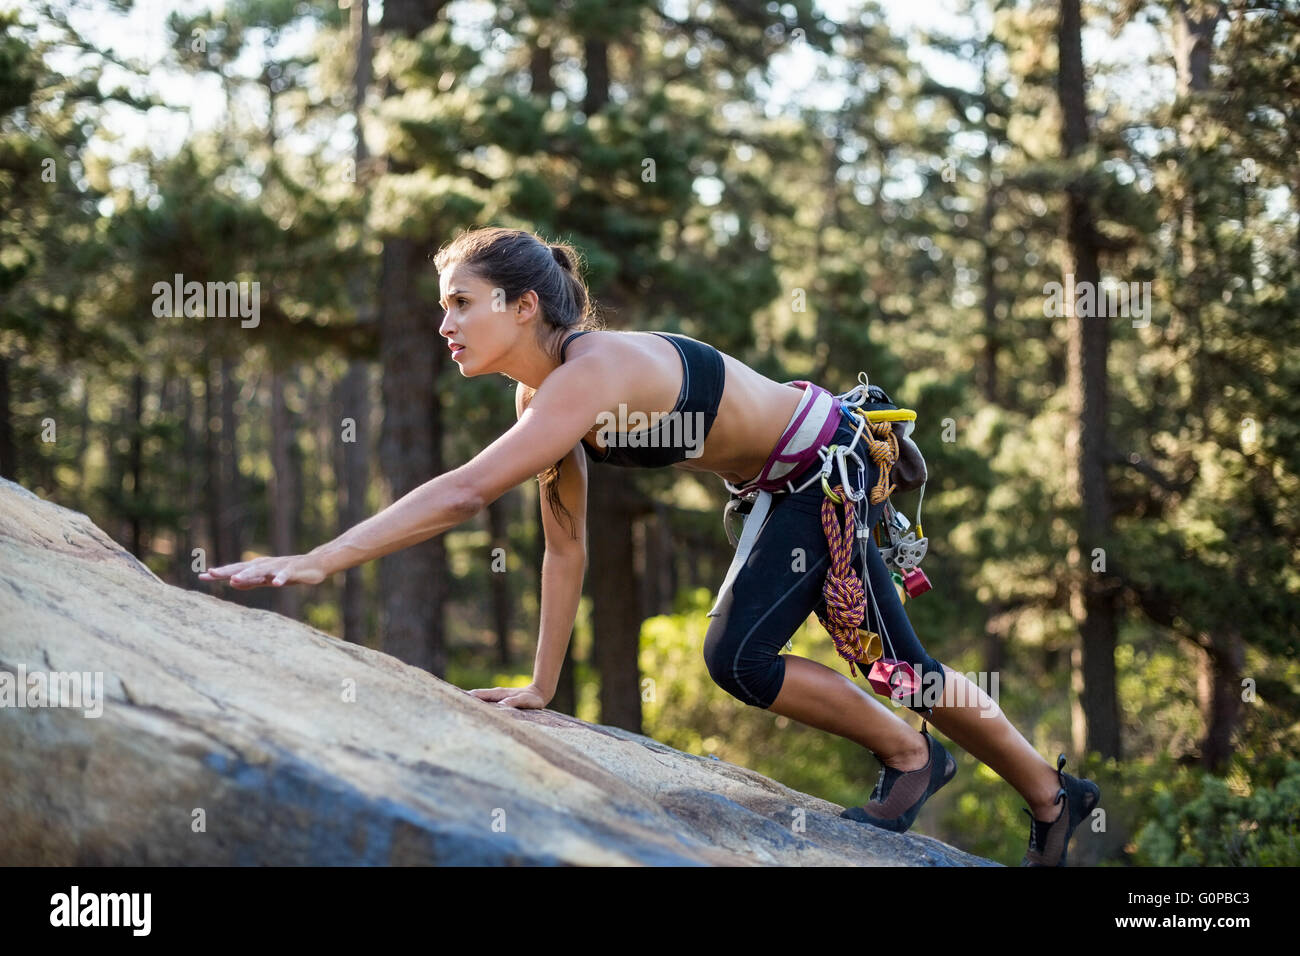 Mujer escalada deportiva una roca Foto de stock